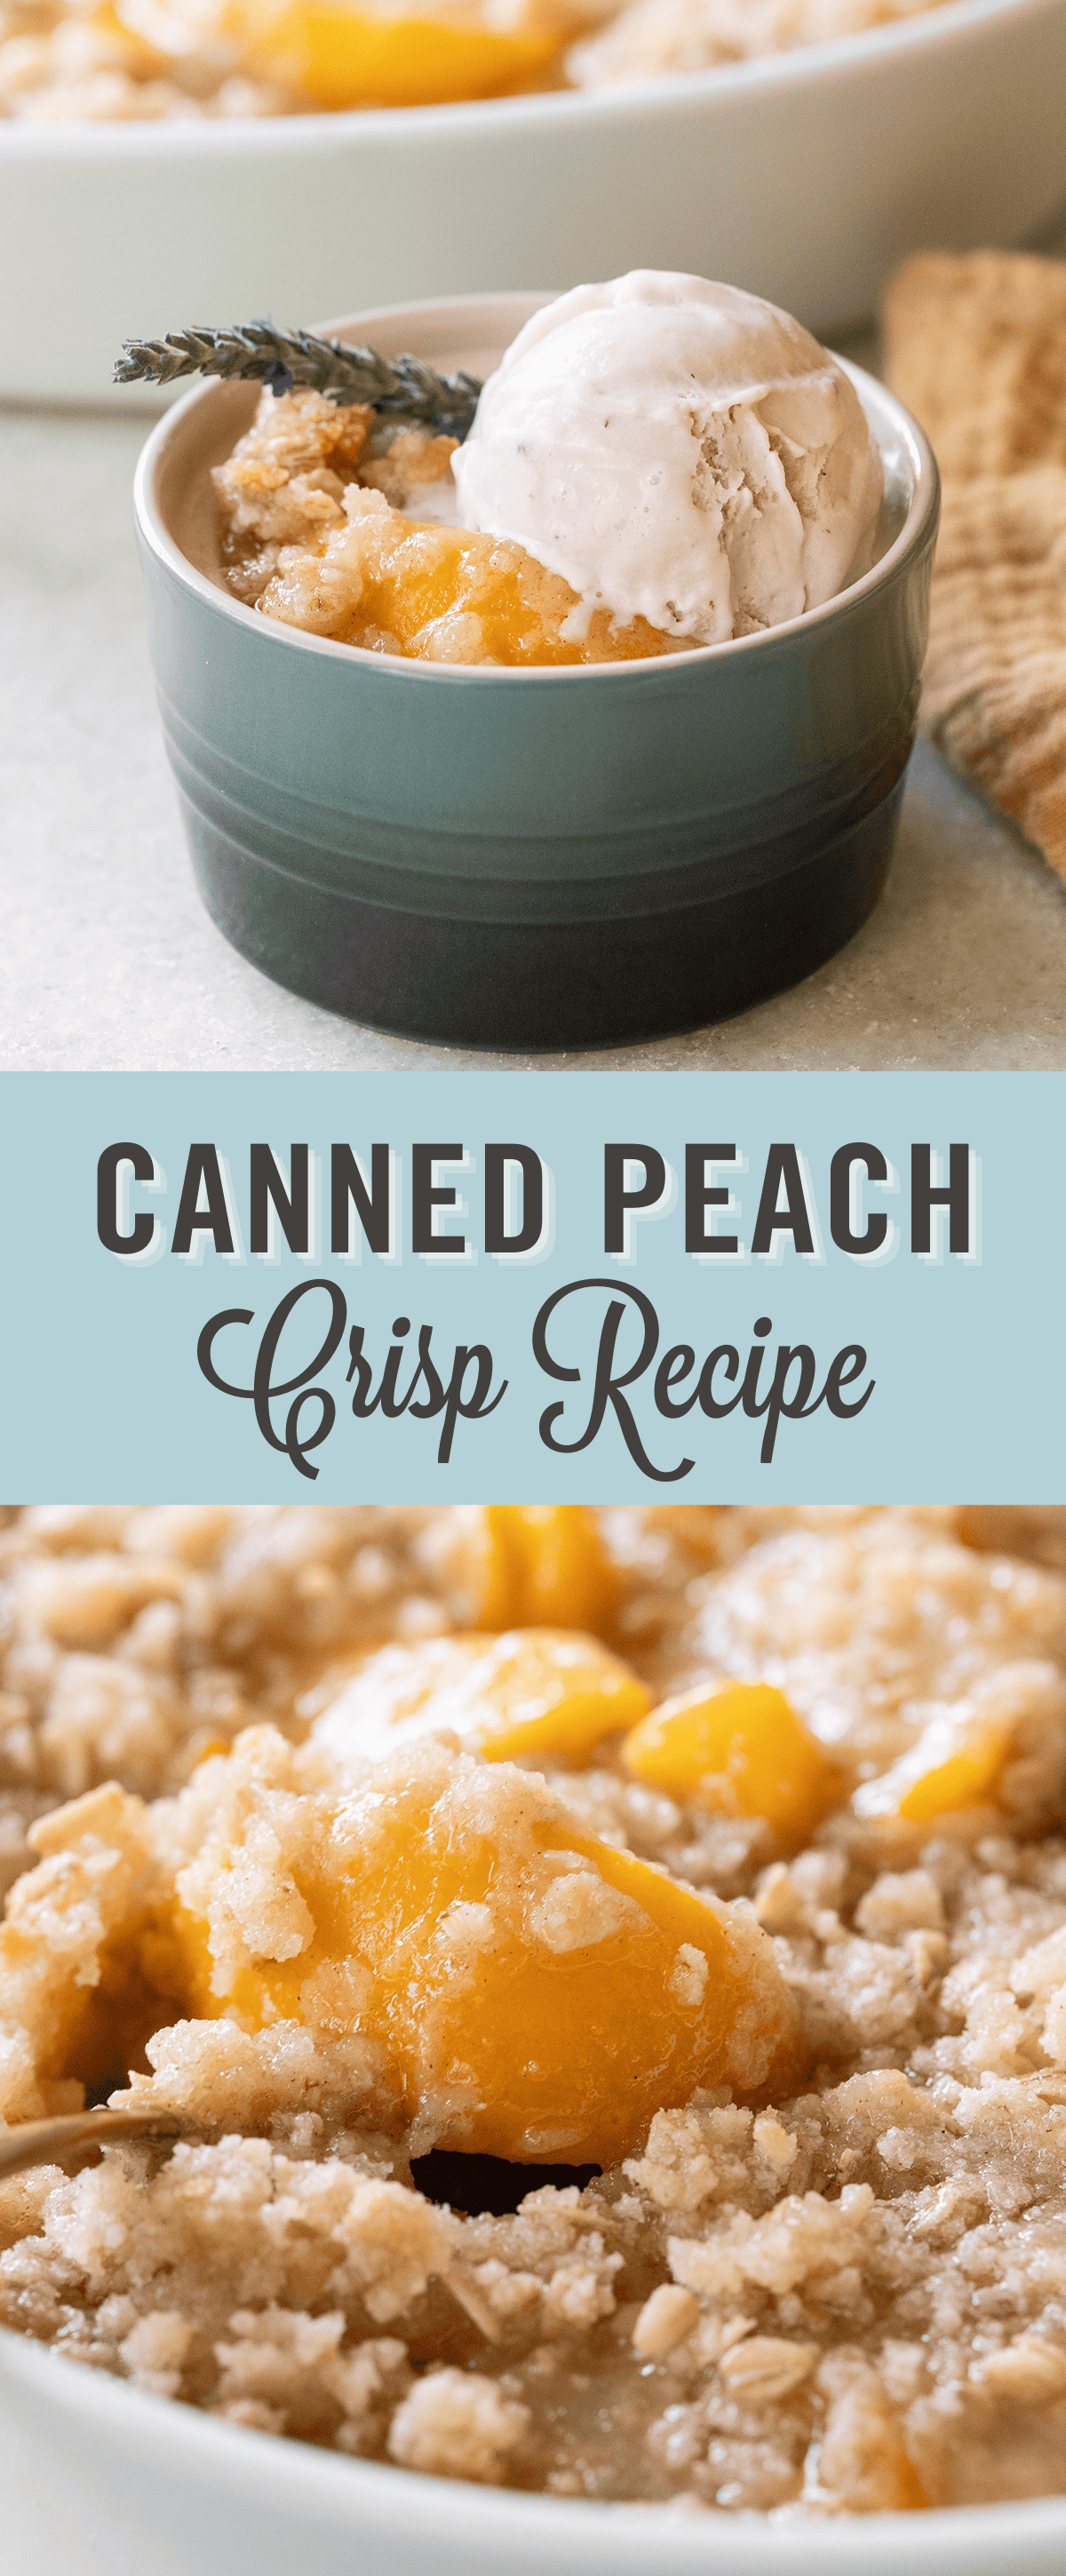 Canned peach crisp recipe.